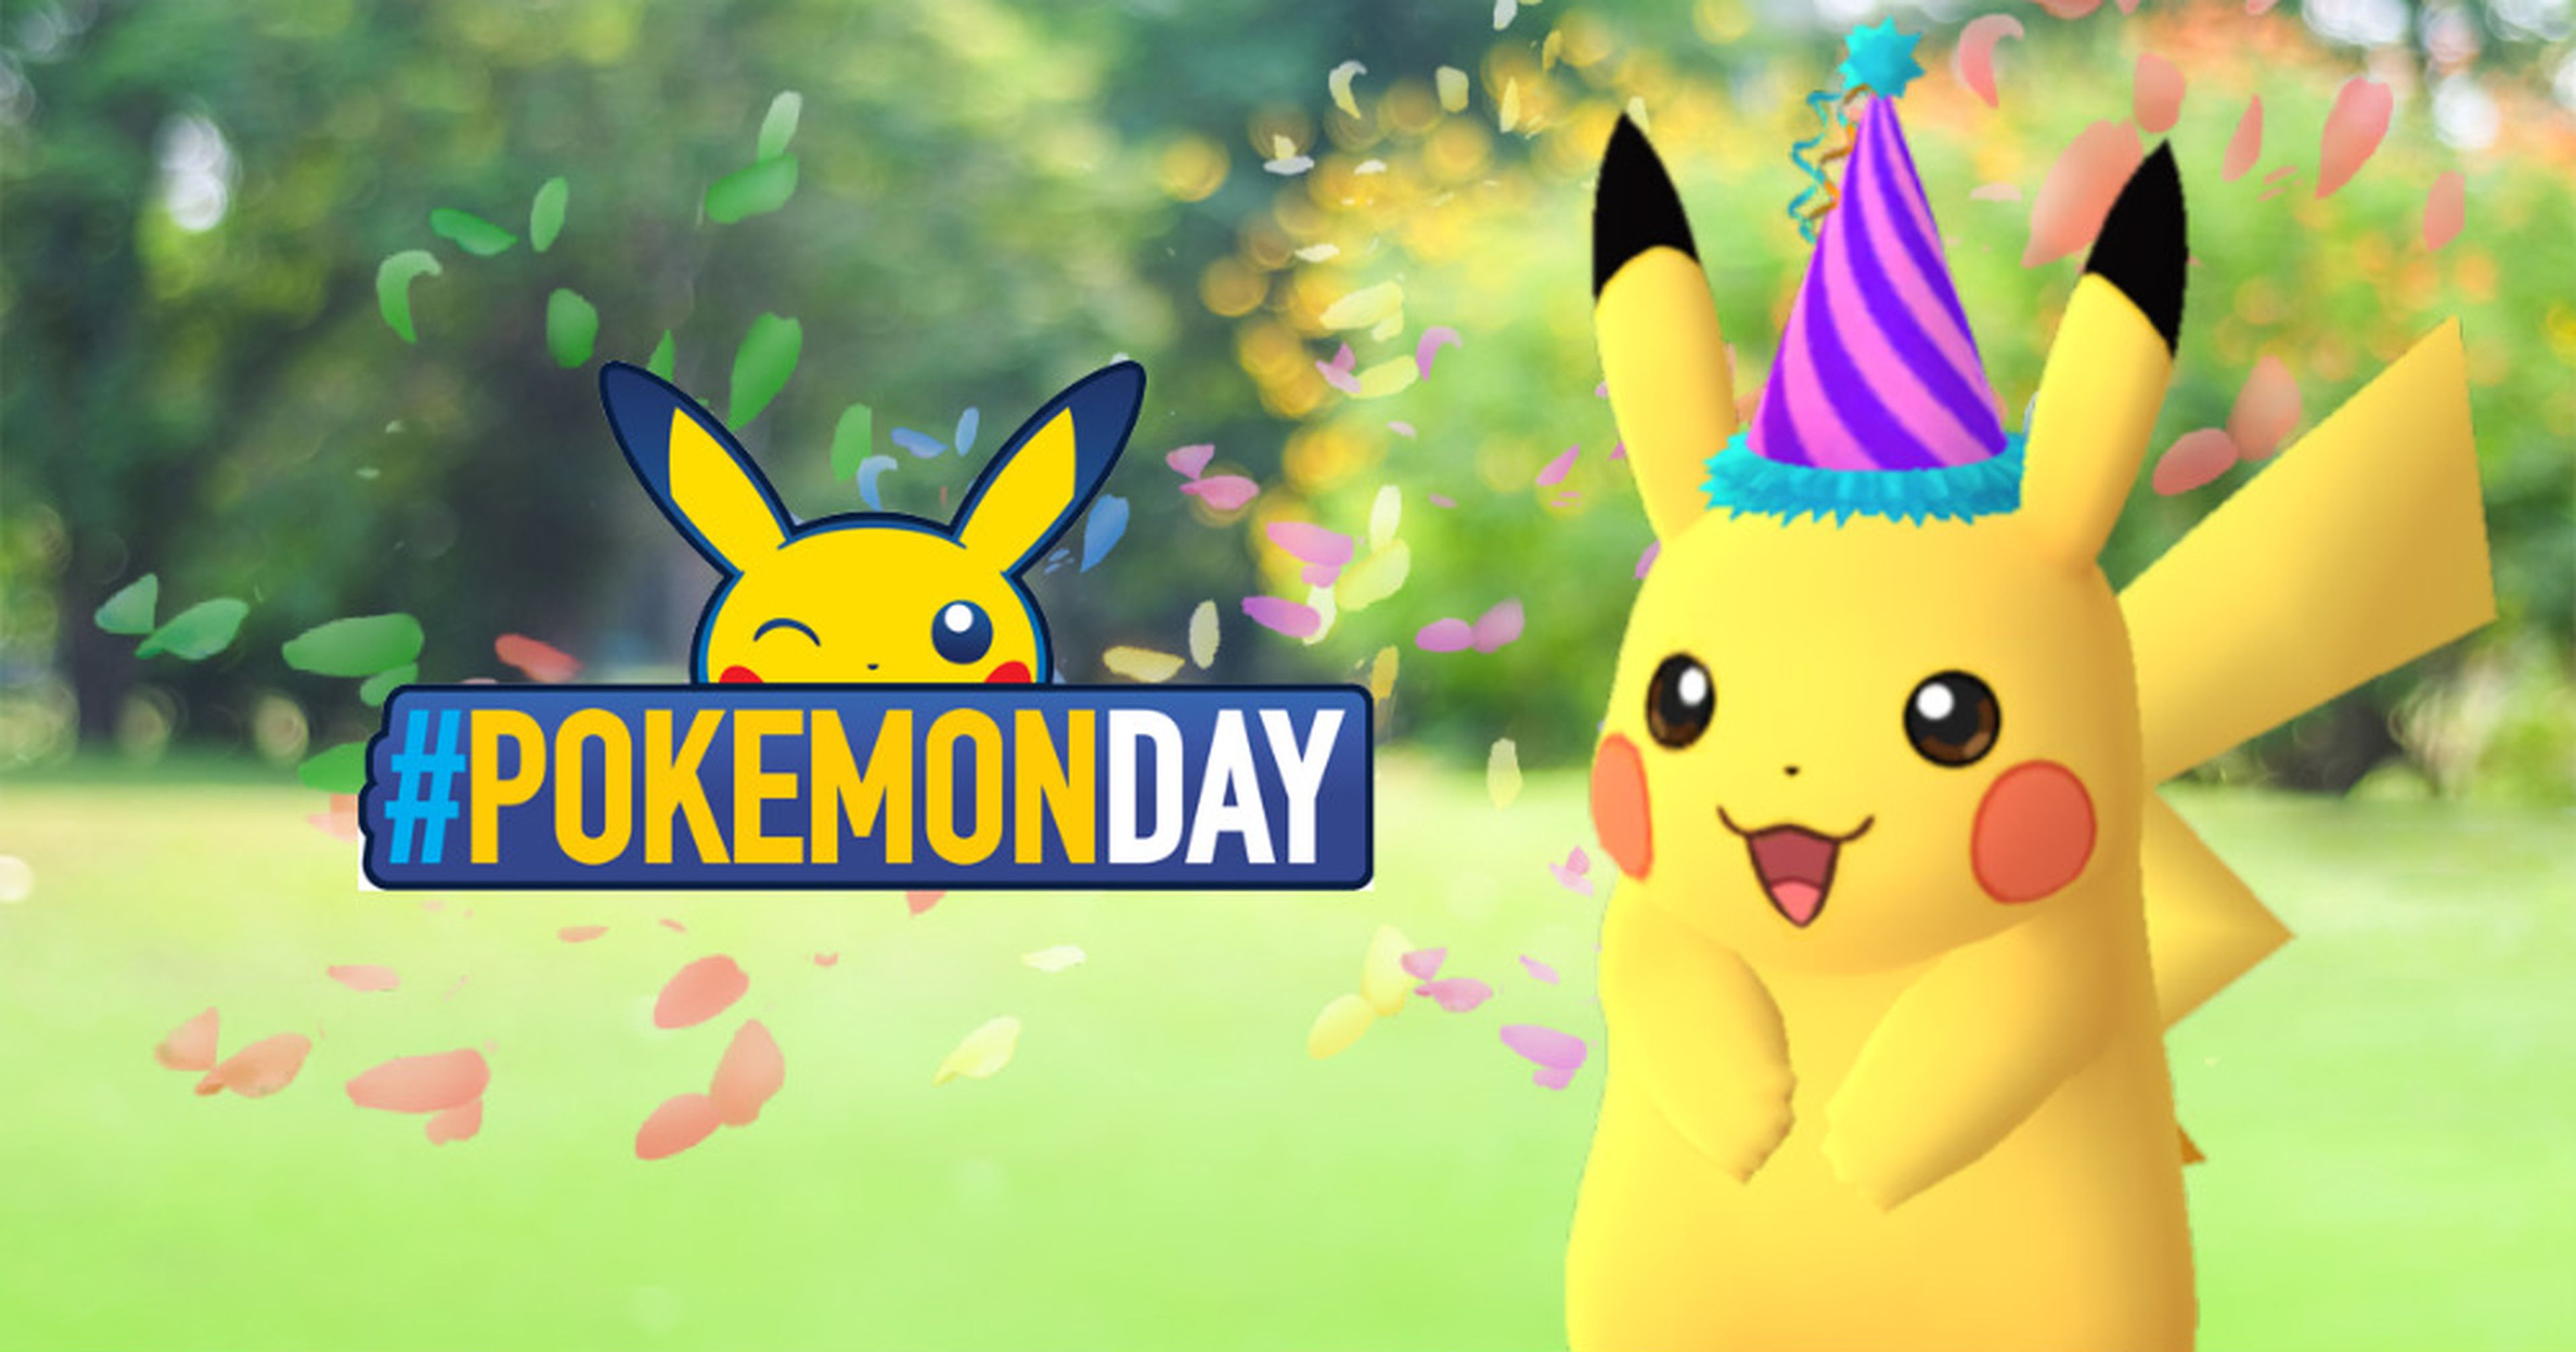 Pokémon GO - Pikachu festivo